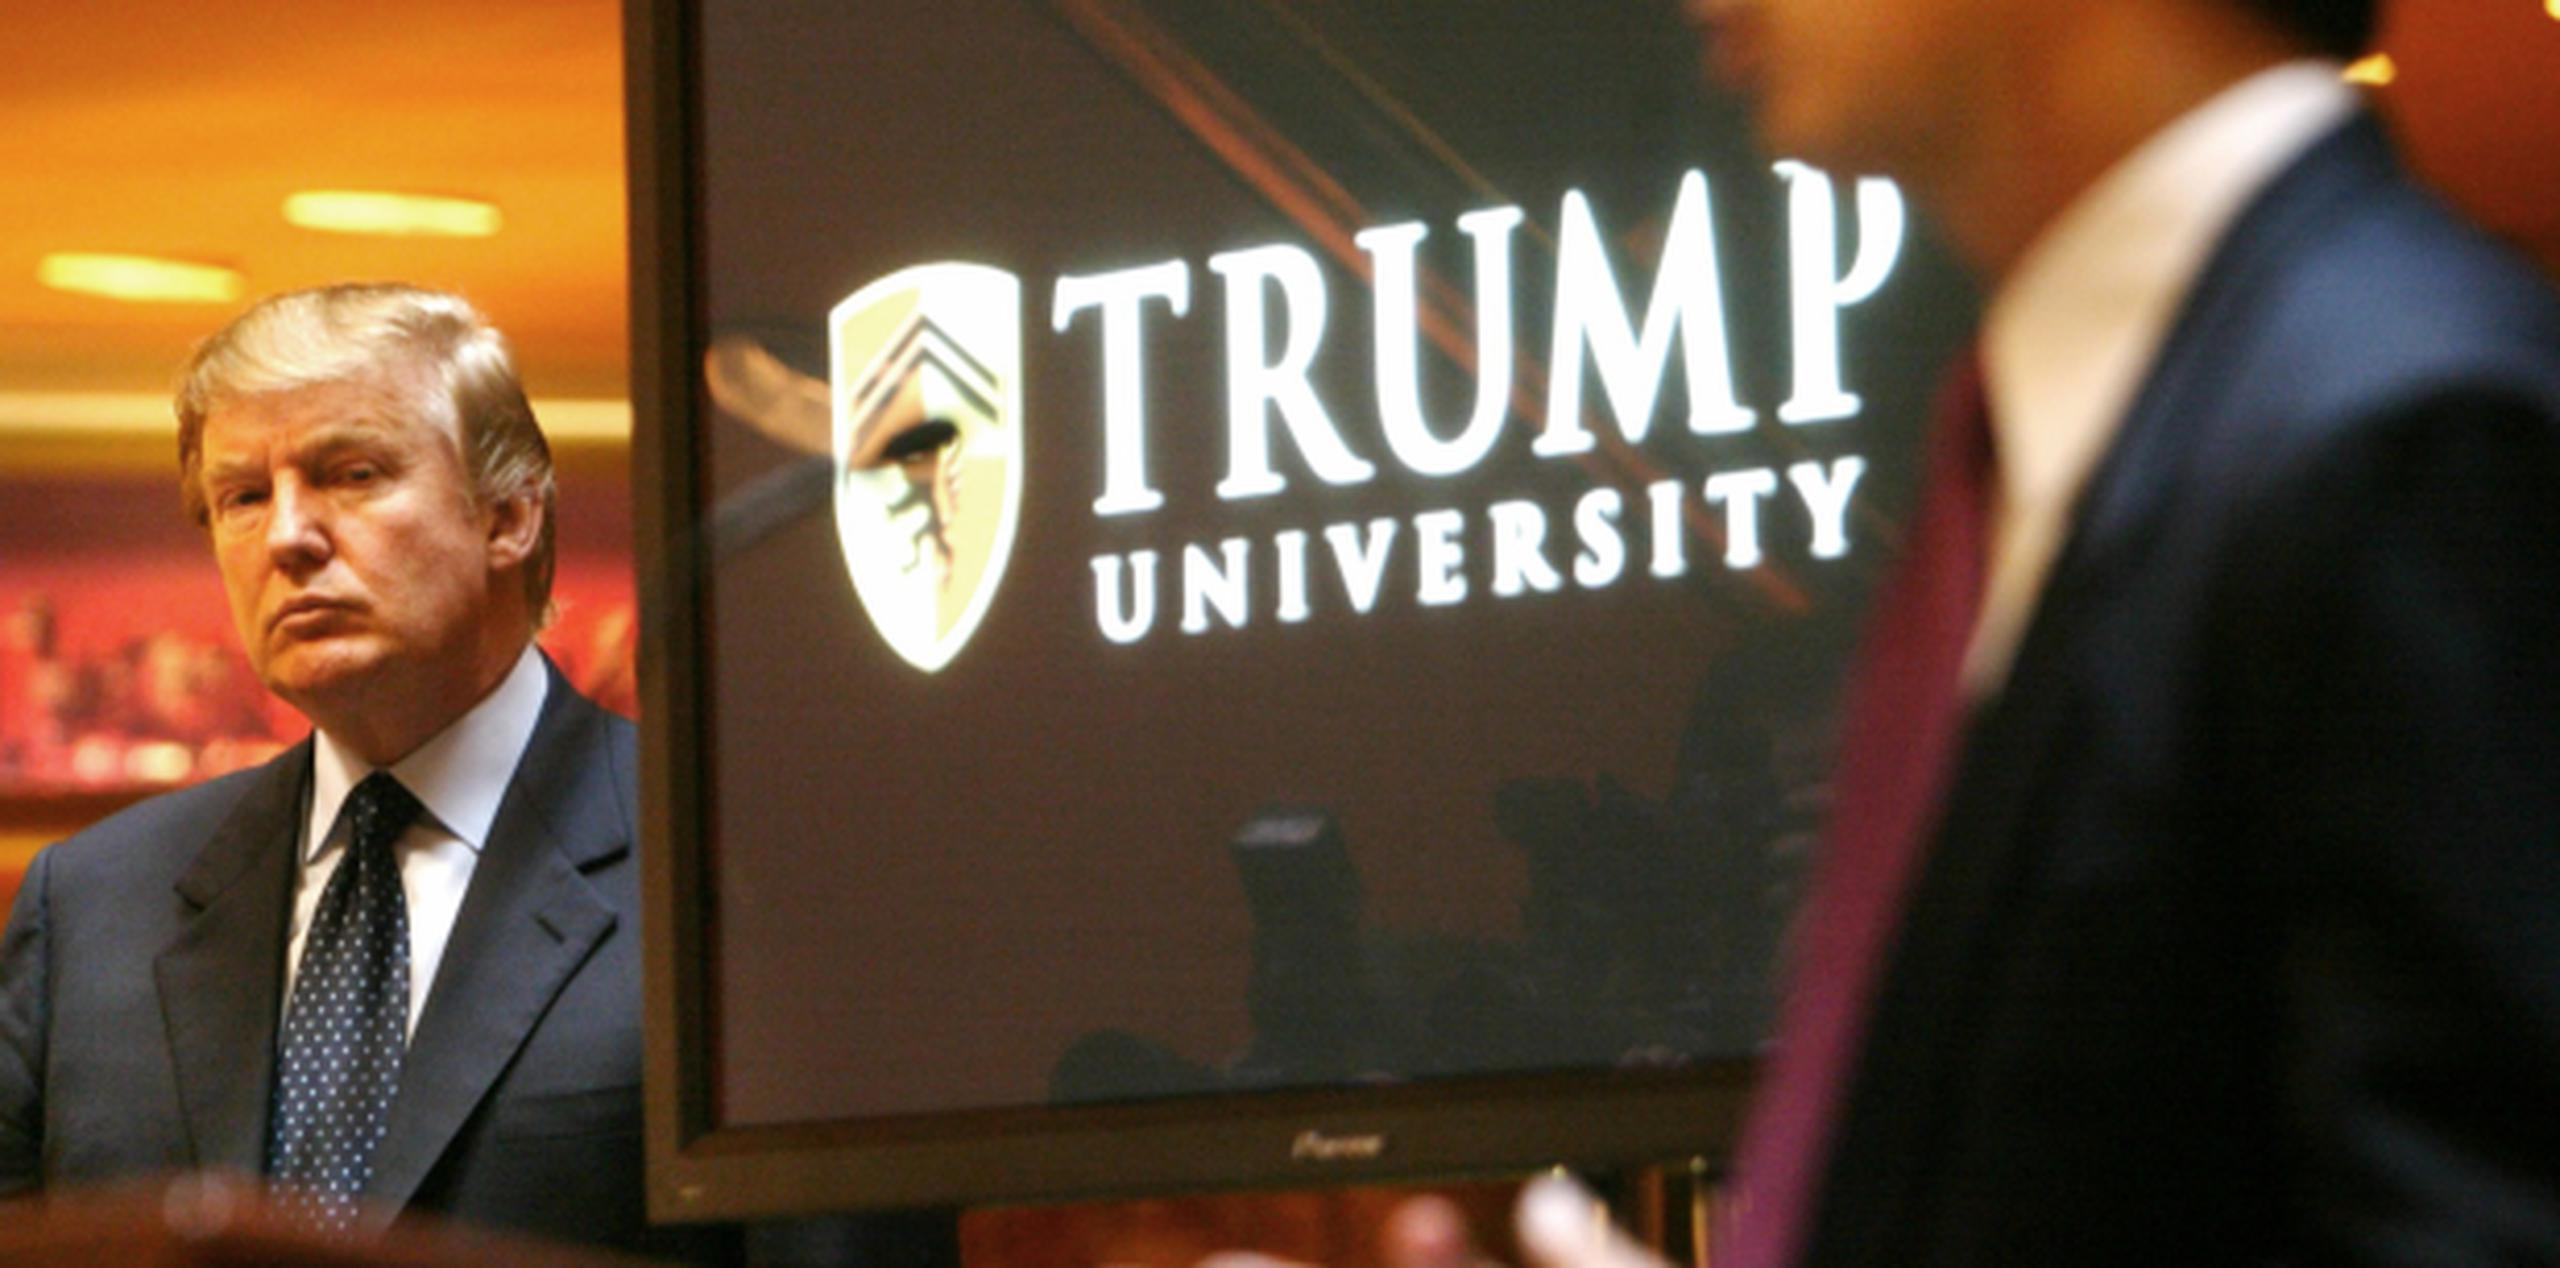 Eric Schneiderman asegura que Trump ayudó a dirigir una universidad falsa que prometía a los estudiantes enriquecerse. (Archivo)